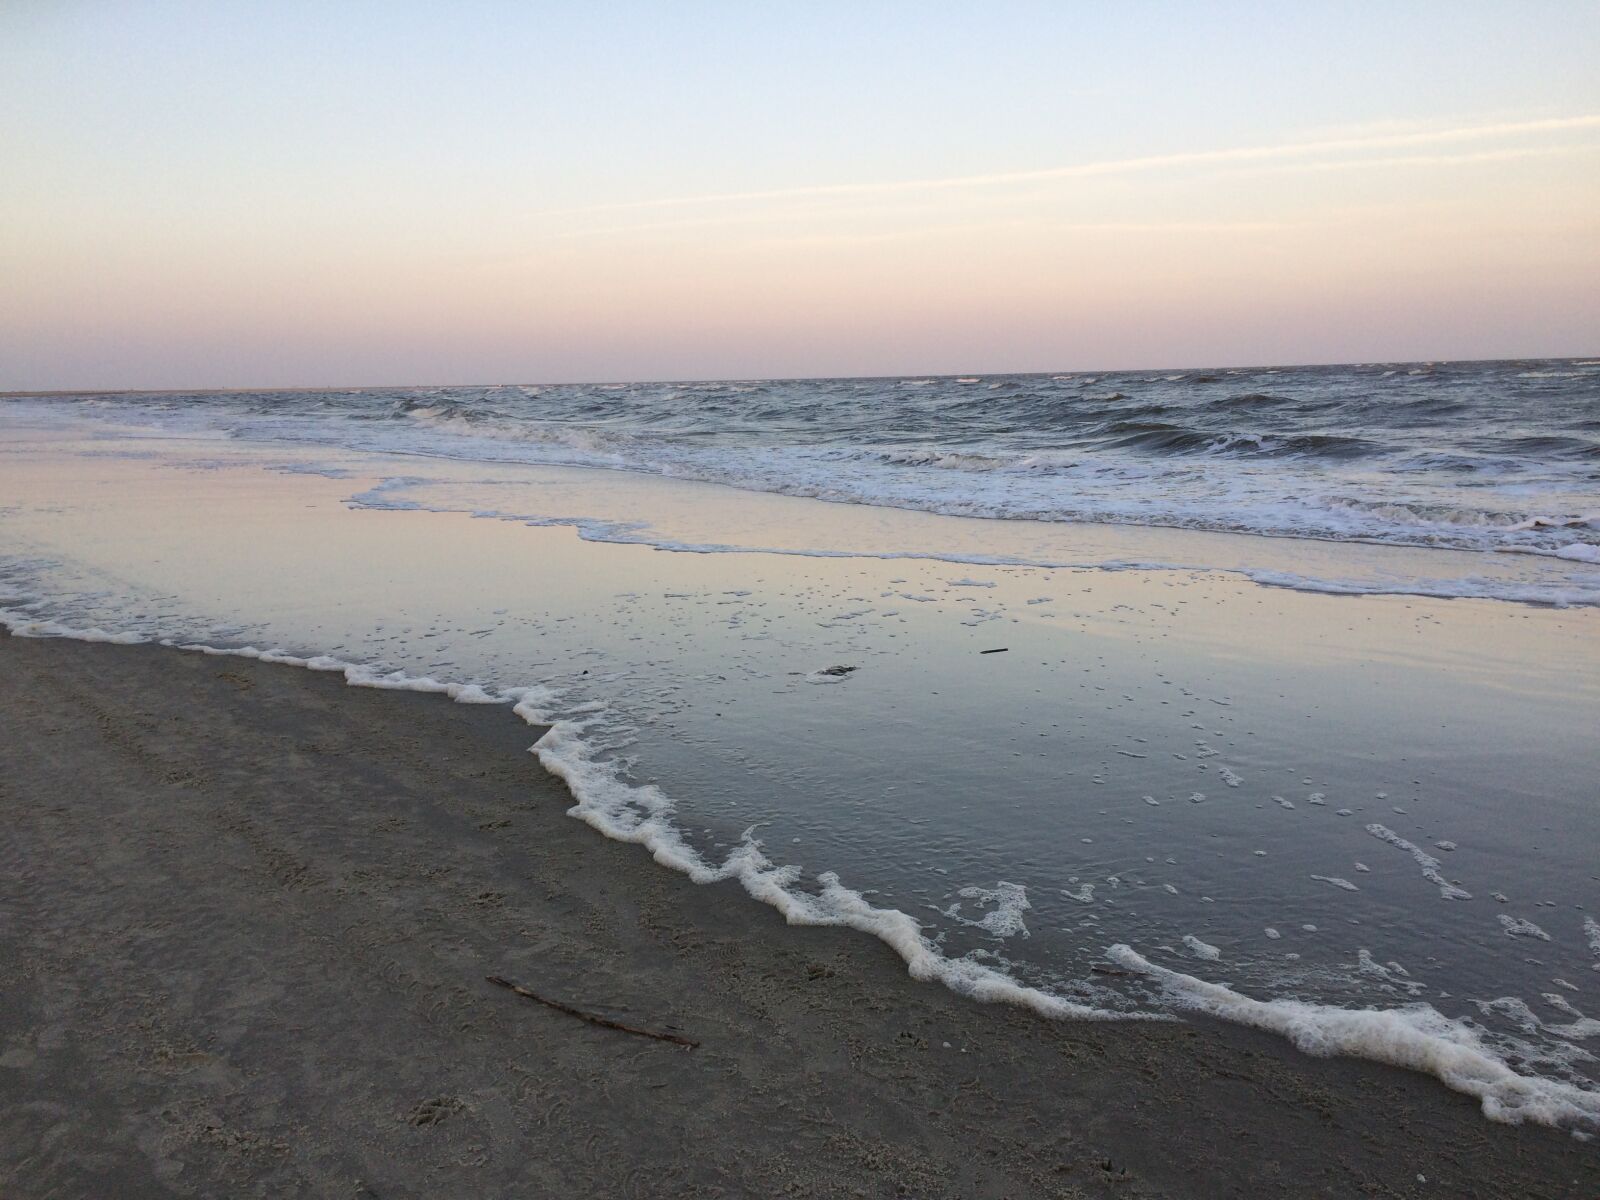 Apple iPhone 5s sample photo. Beach, coast, ocean photography